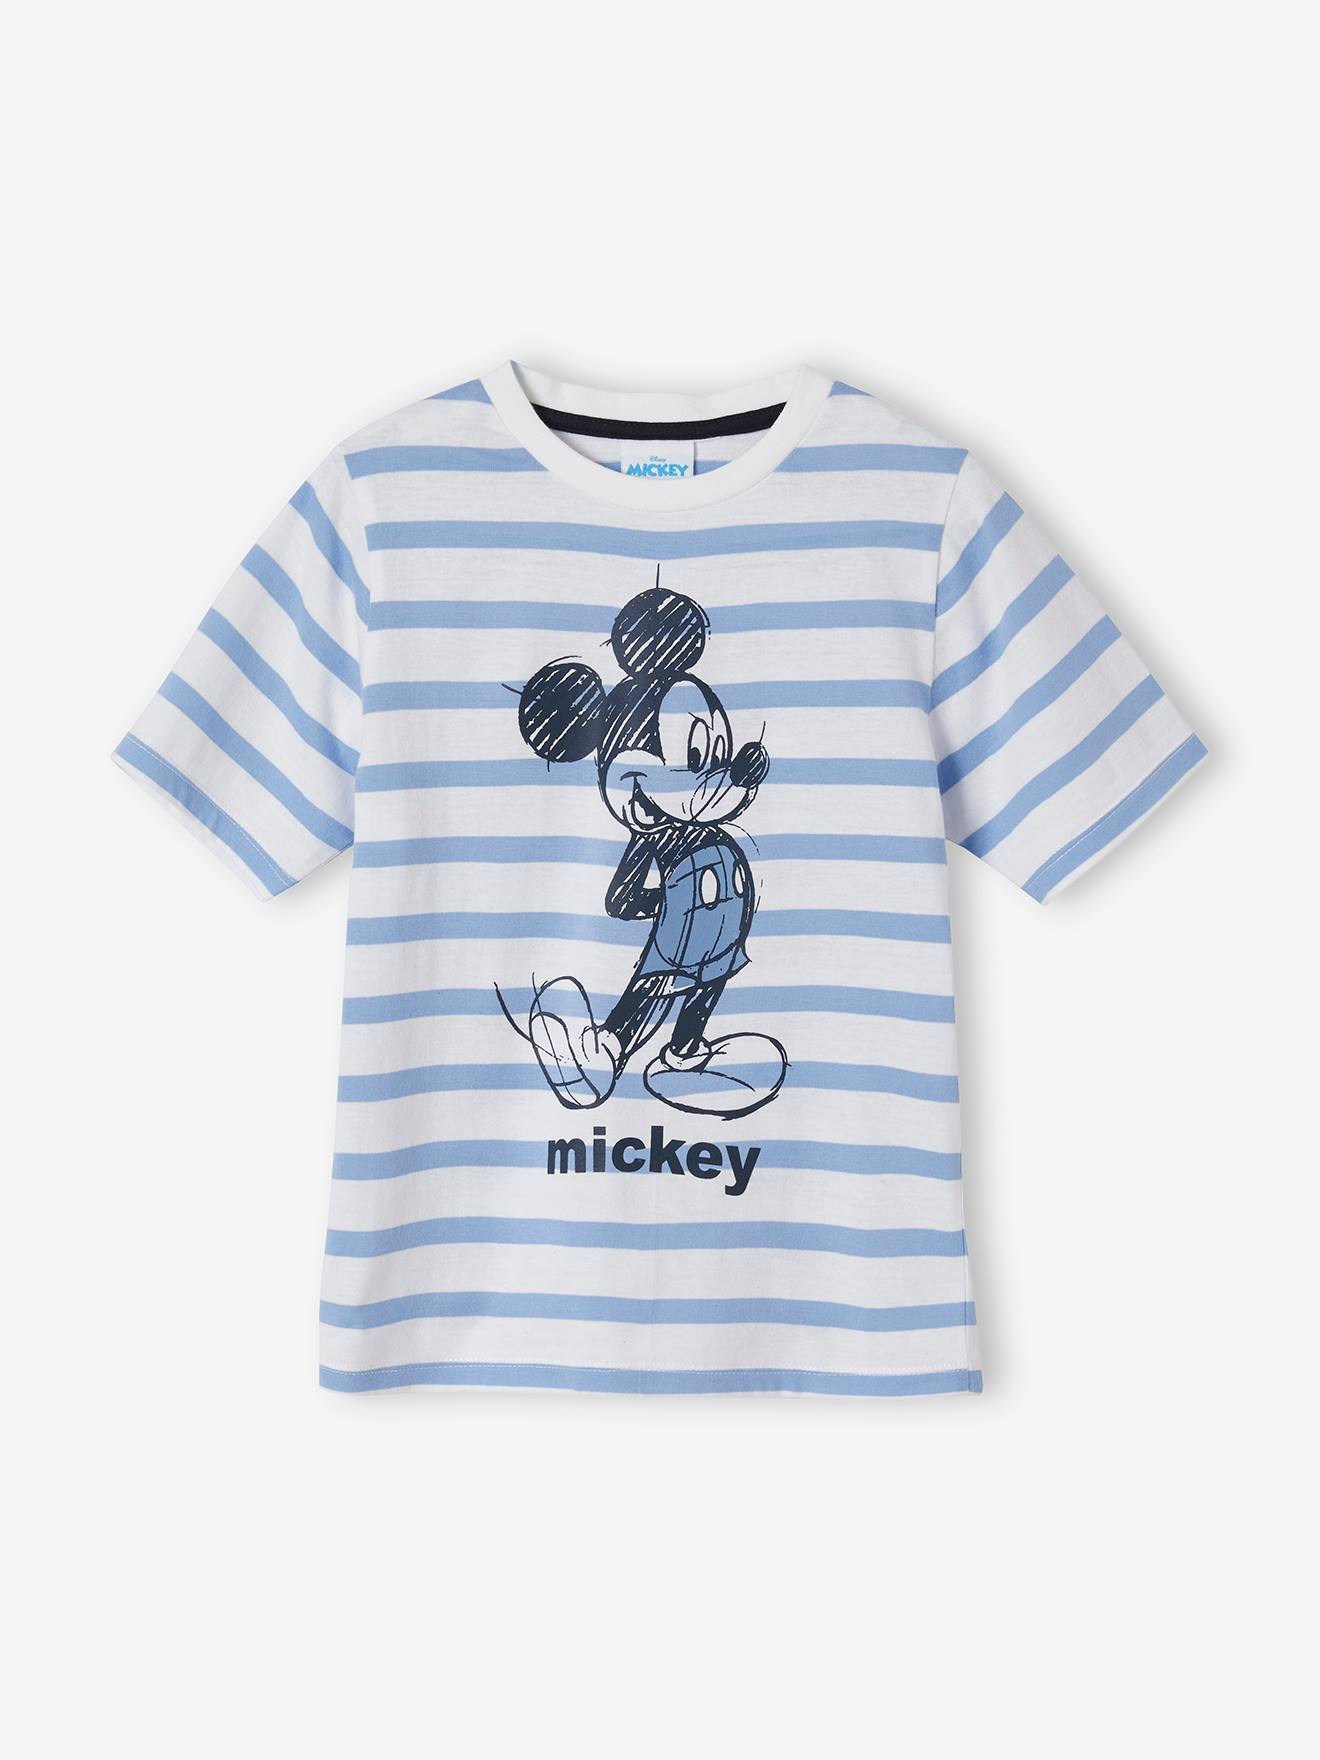 Boys Mickey Mouse Pyjamas Age 4 Brand New 